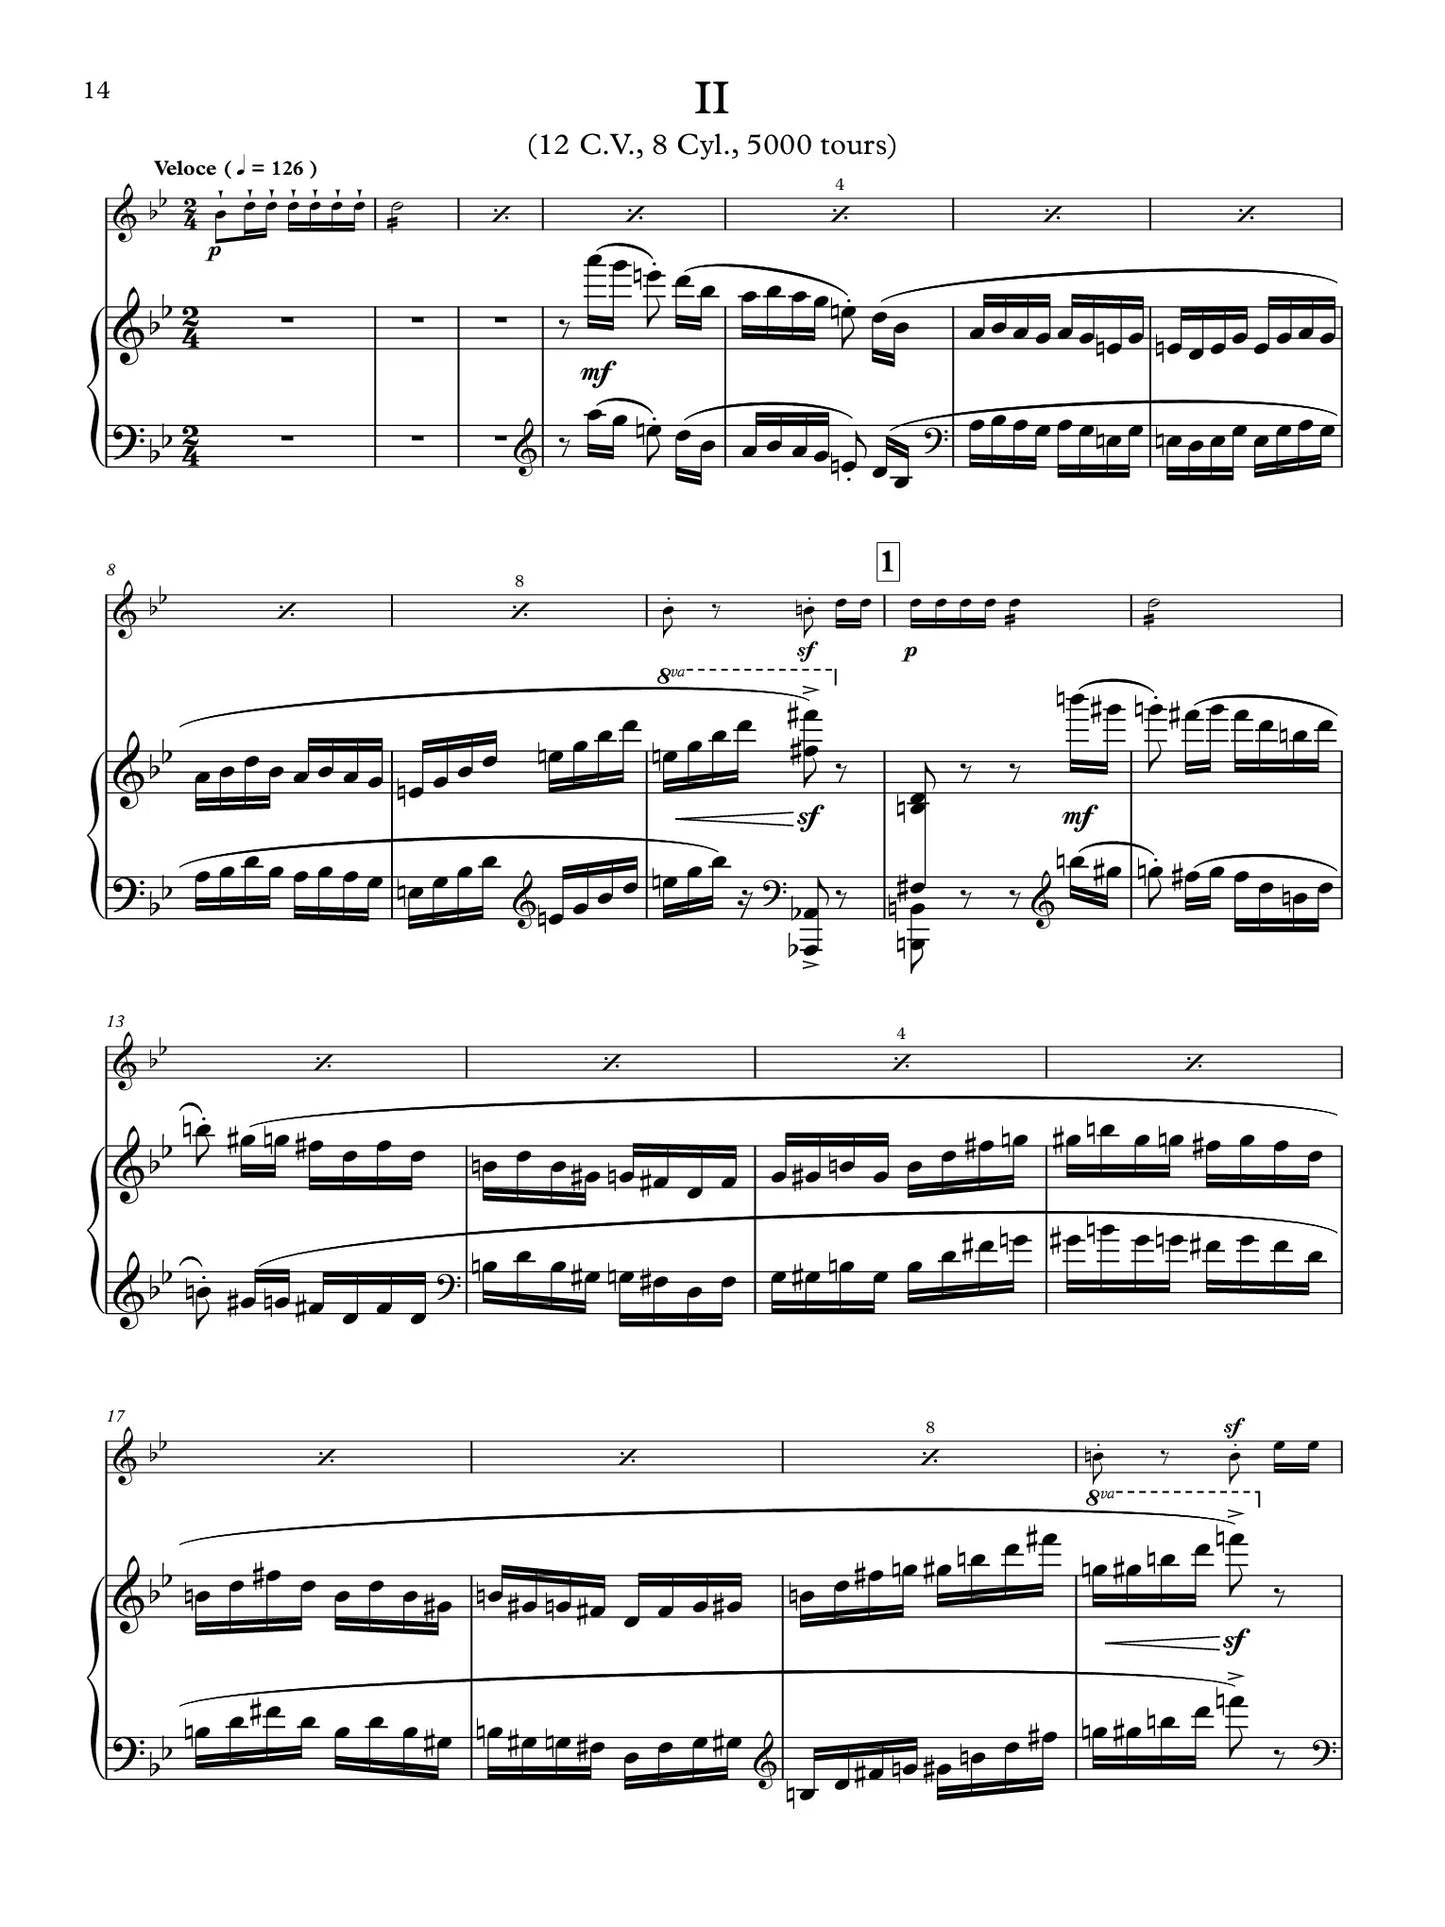 Hahn (arr. Mezzadri) - Sonata in C Major for Flute and Piano